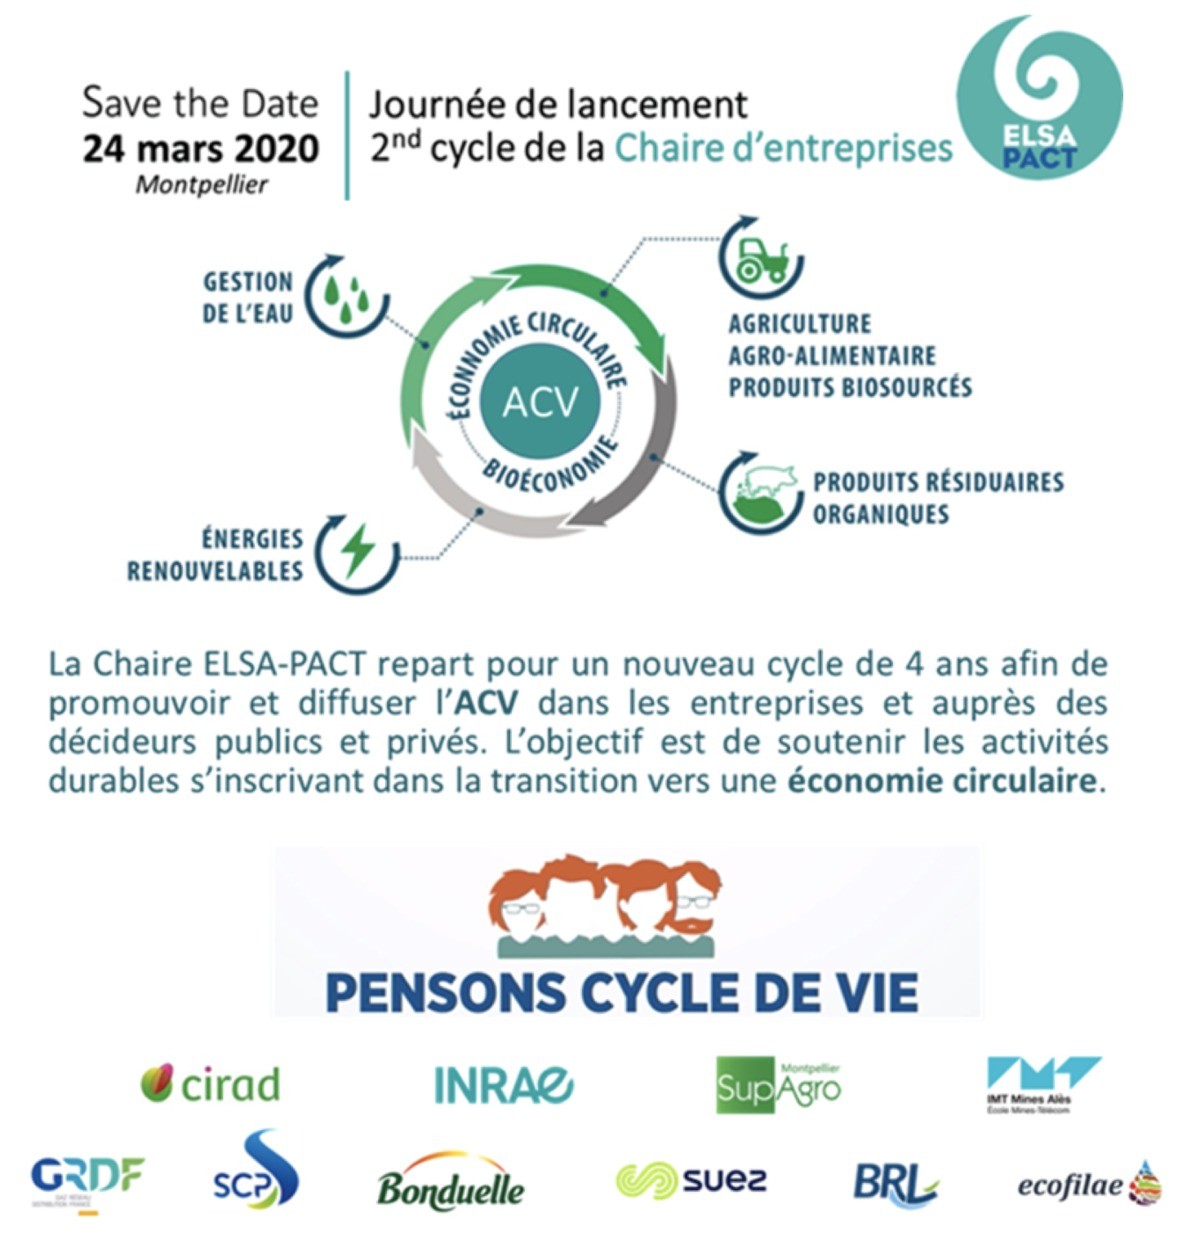 [Vu ailleurs] Journée de lancement de la Chaire ELSA-PACT - 24 mars 2020 Montpellier